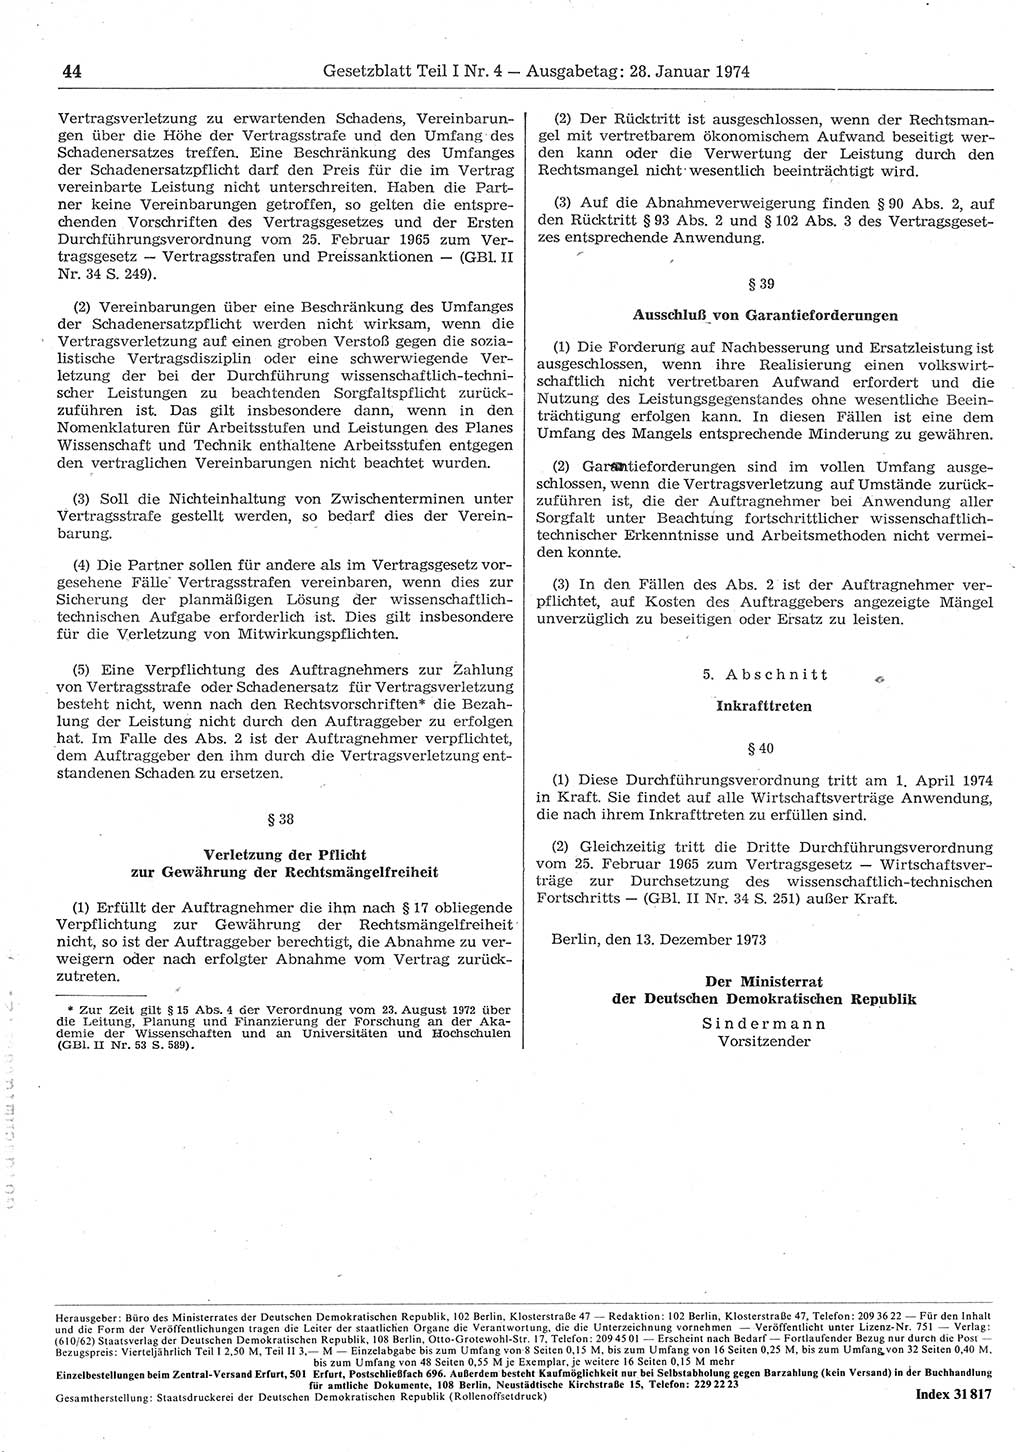 Gesetzblatt (GBl.) der Deutschen Demokratischen Republik (DDR) Teil Ⅰ 1974, Seite 44 (GBl. DDR Ⅰ 1974, S. 44)